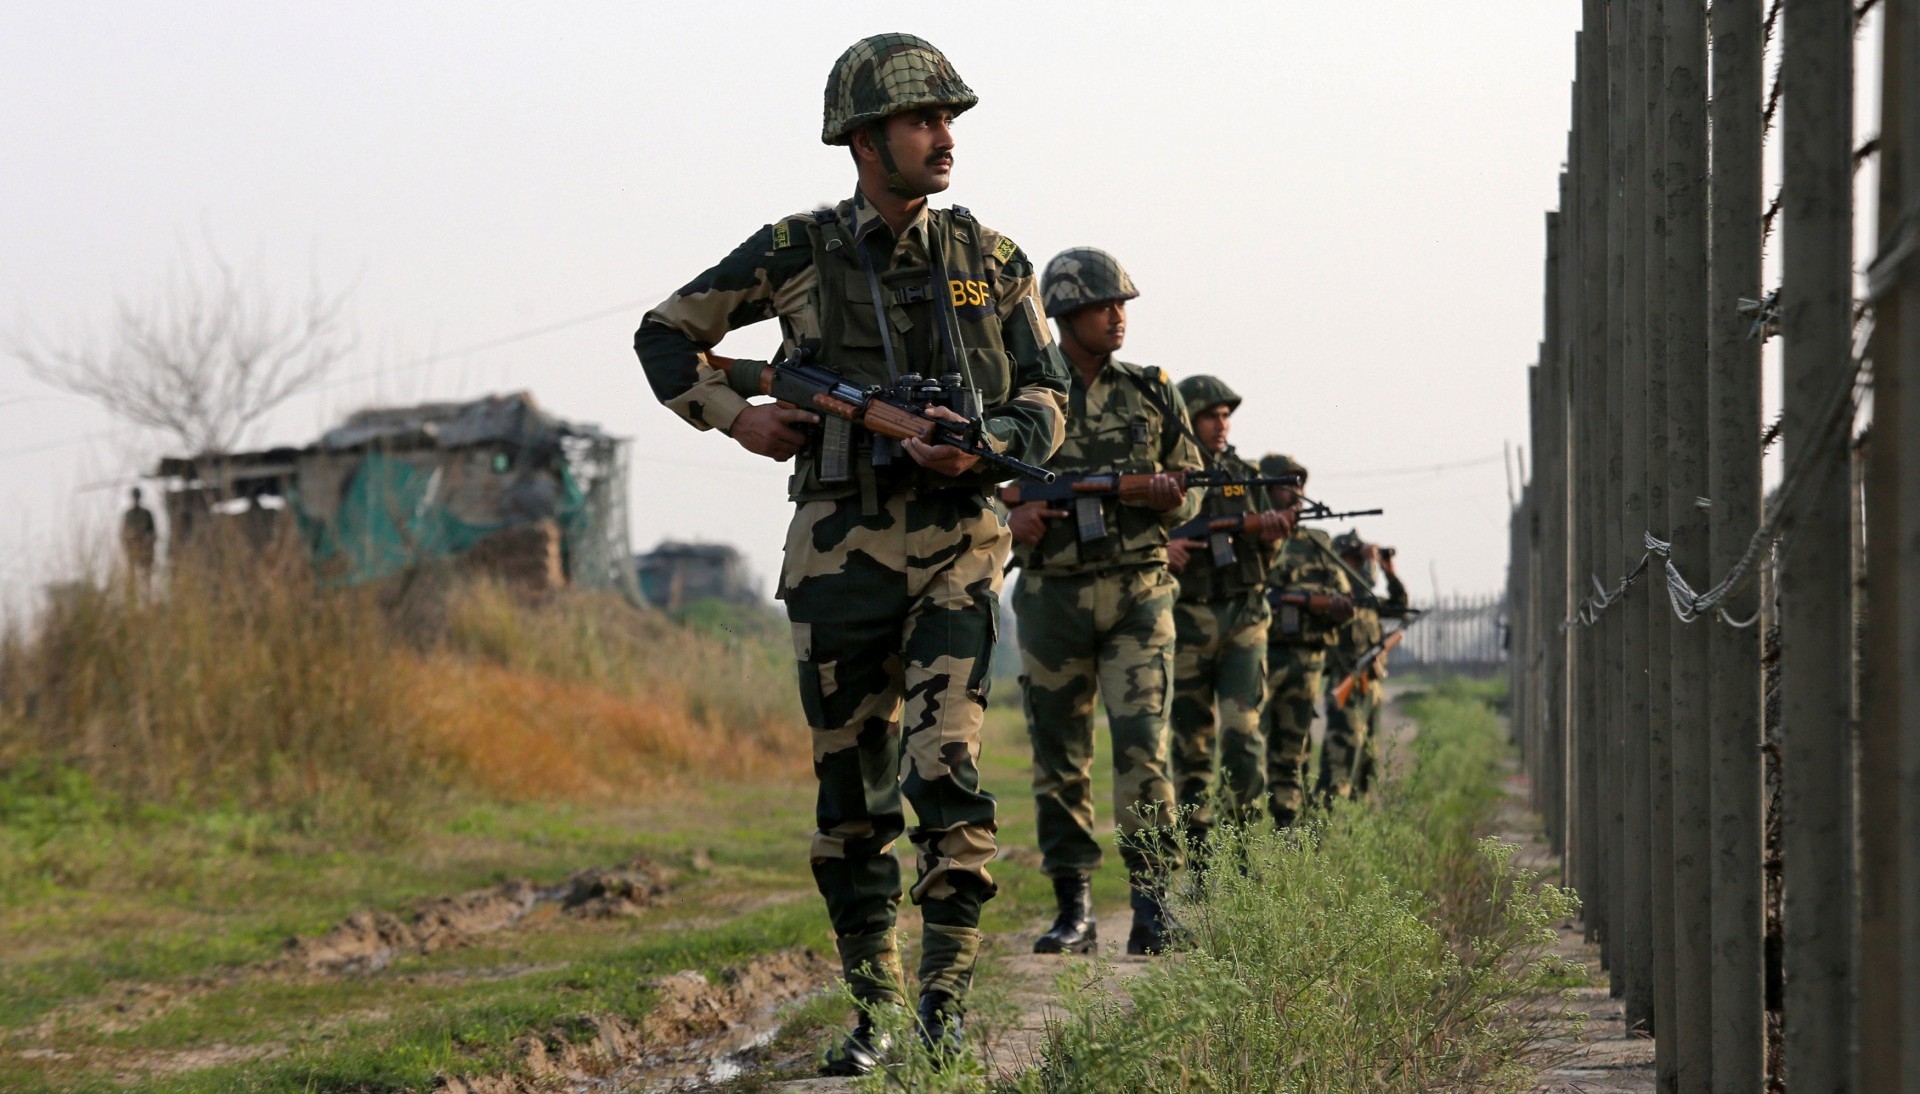 Soldados indios patrullan por la frontera con Pakistán en el sector Ranbir Singh Pura, cerca de Jammu, el 26 de febrero de 2019 (REUTERS/Mukesh Gupta)